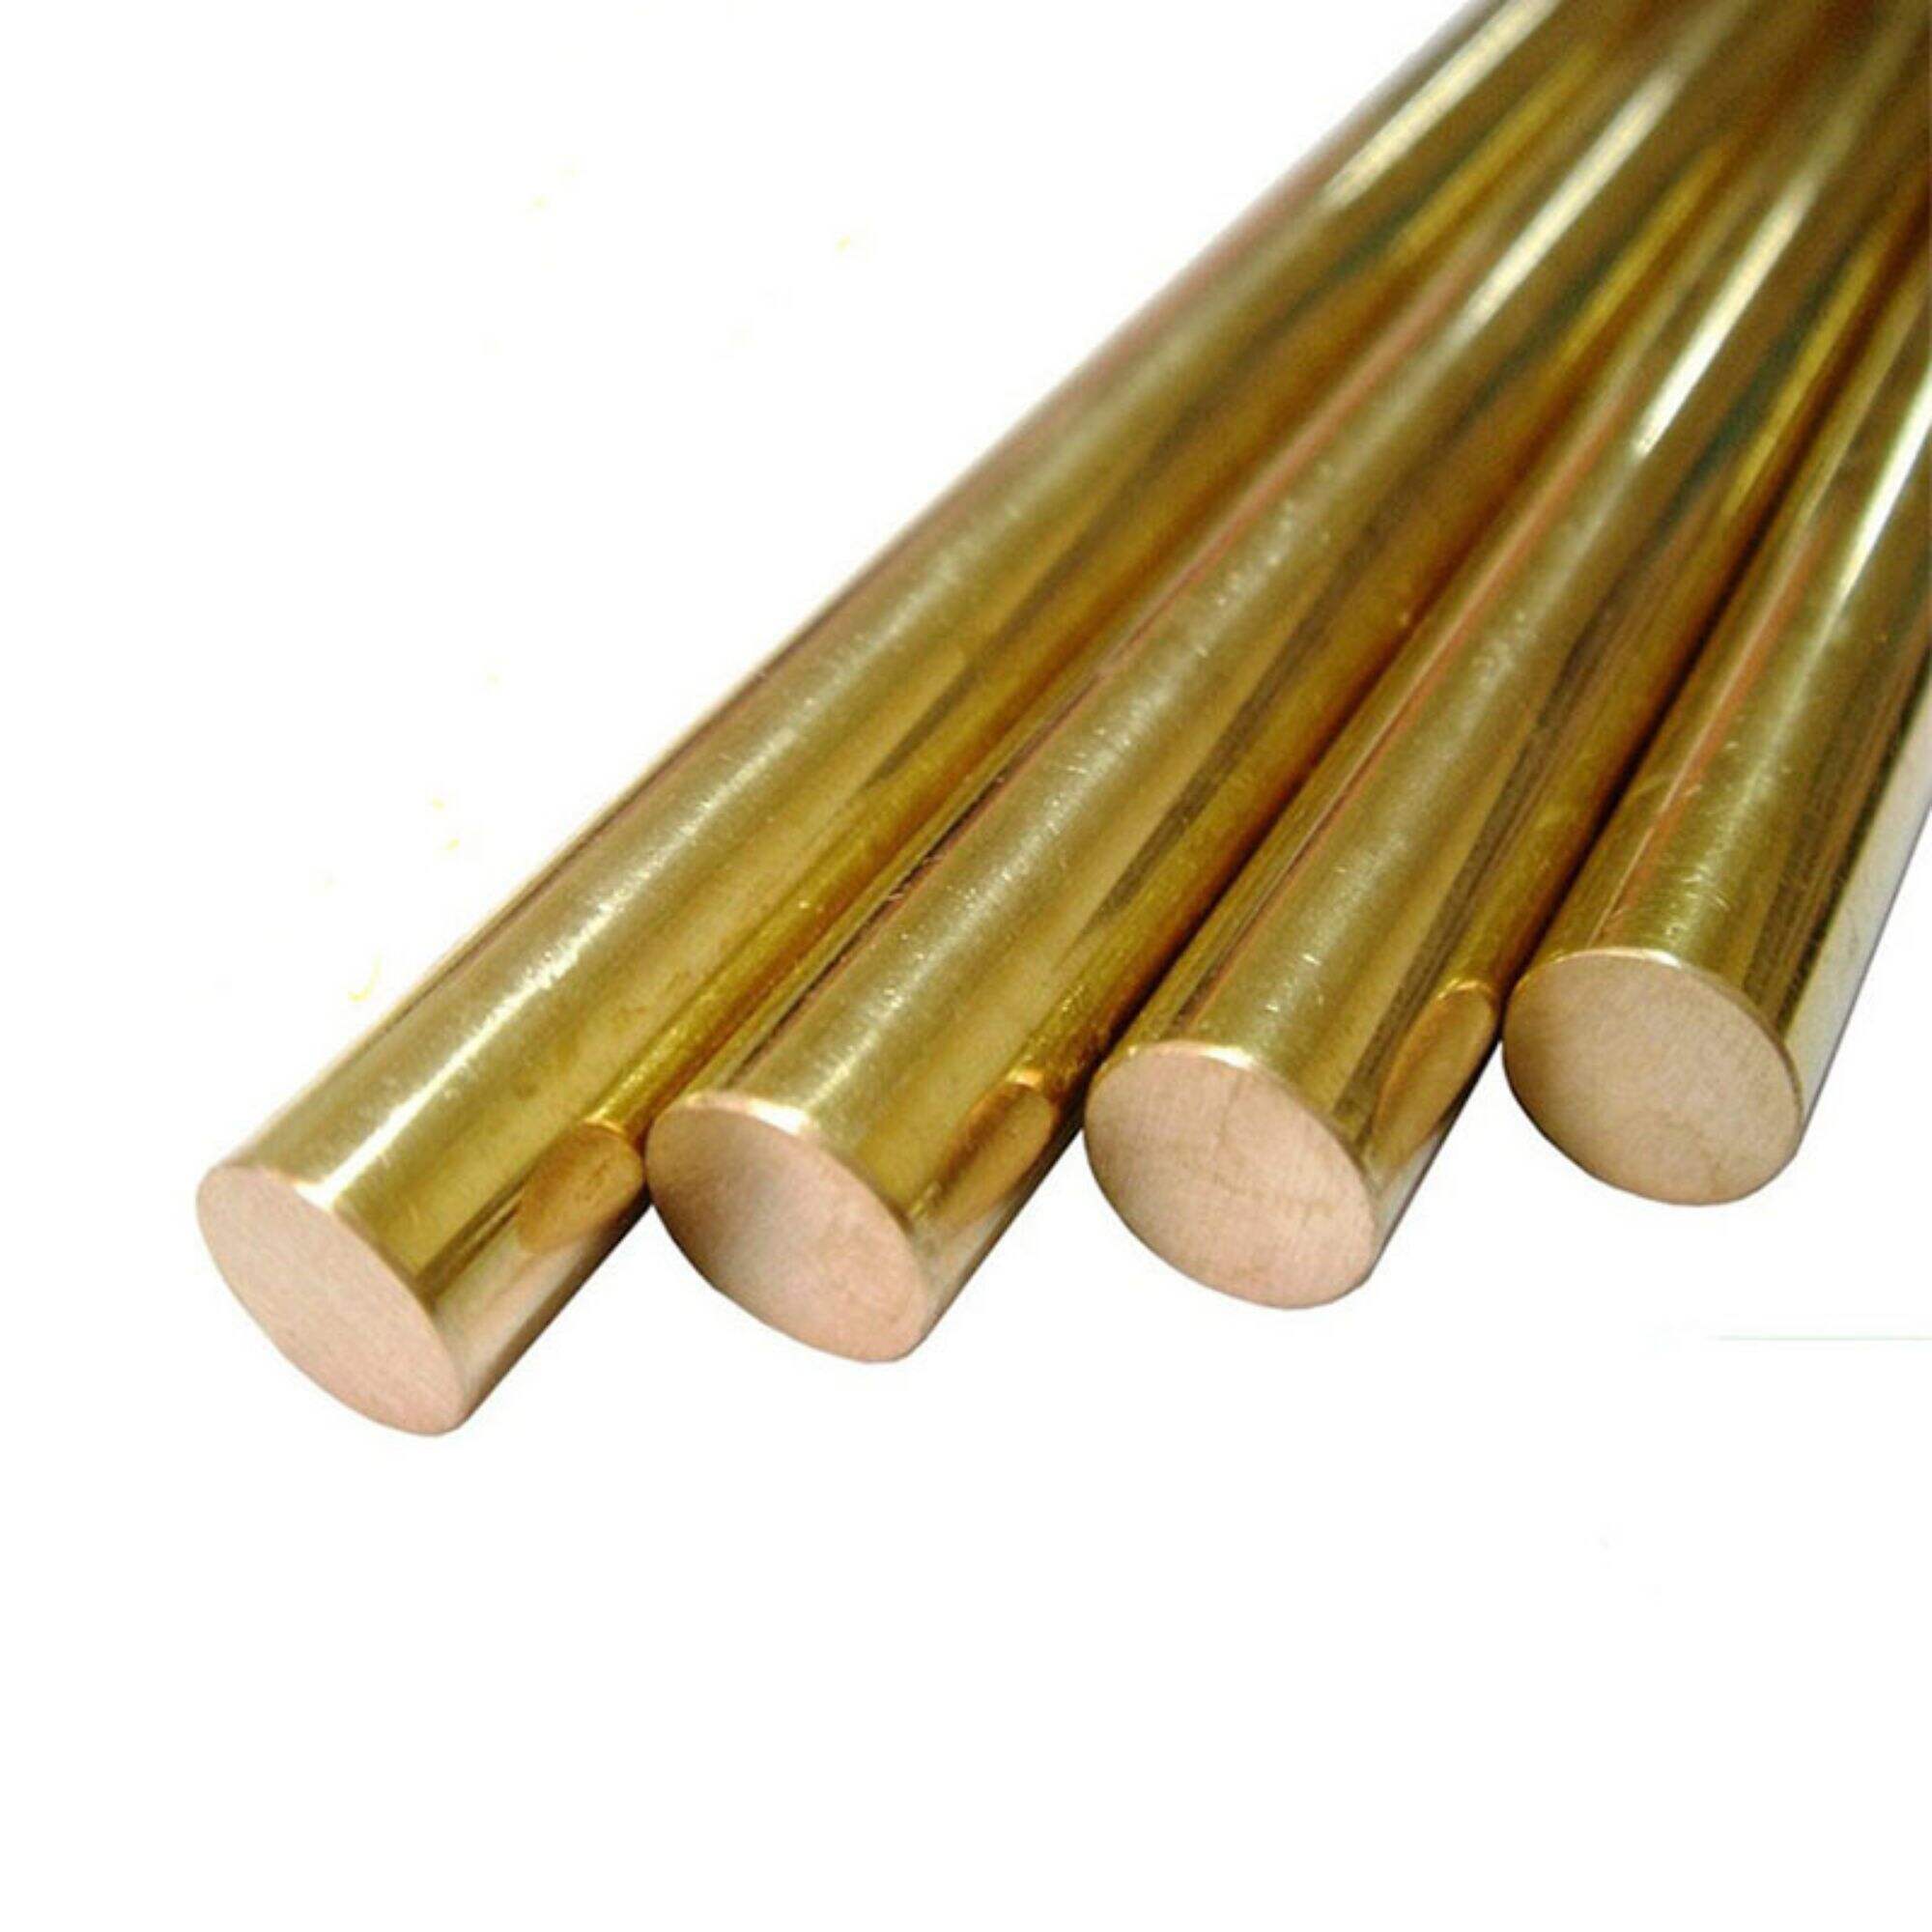 Wholesale c2100 c2200 c2300 c2680 solid copper rod 4mm 5mm 6mm brass bar